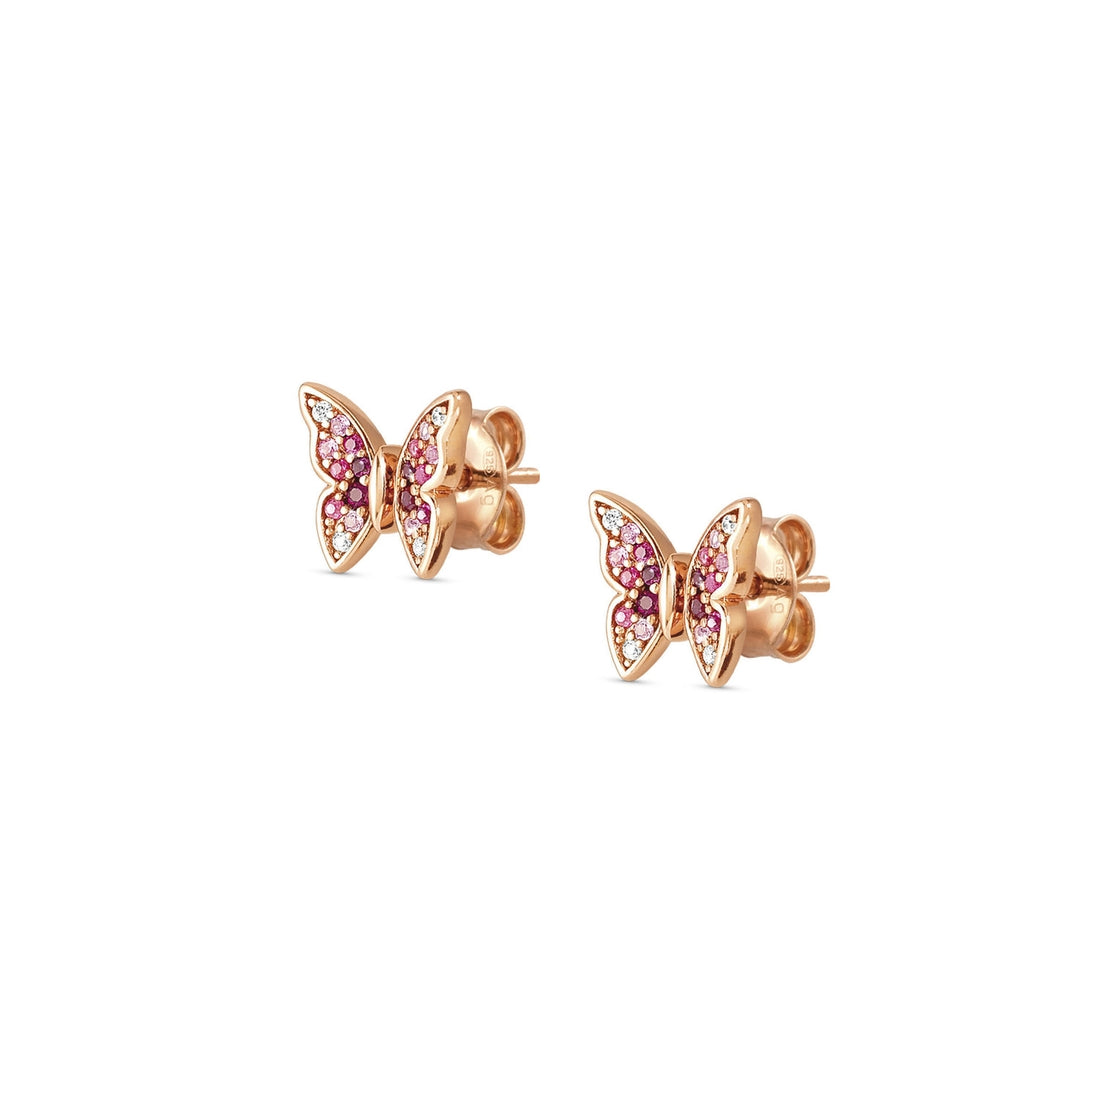 Orecchini Nomination Crysalis a farfalla in argento con pavè di zirconi rosa